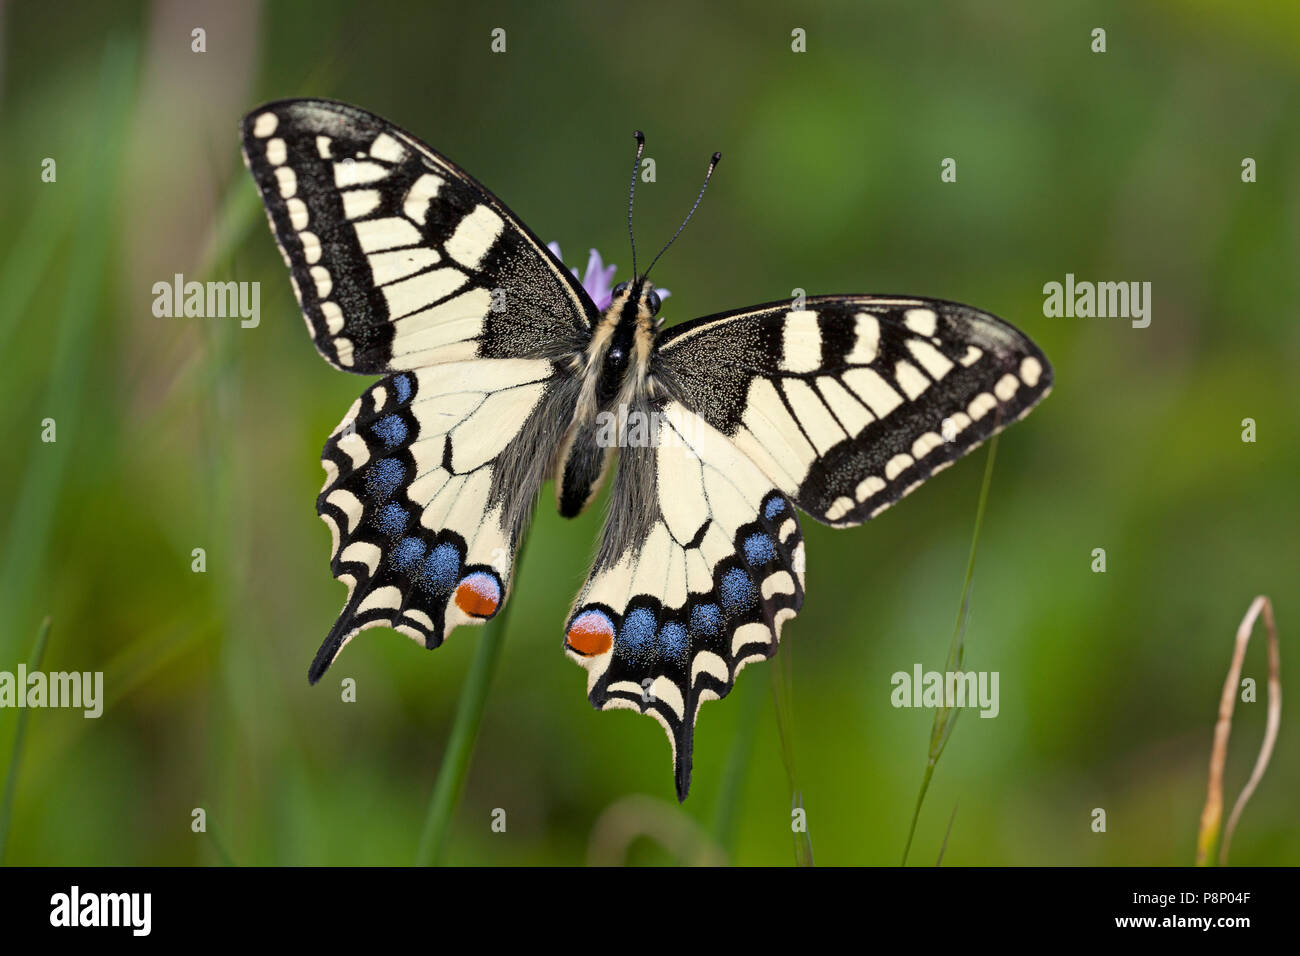 Especie del viejo mundo (Papilio machaon) disfrutando del sol Foto de stock